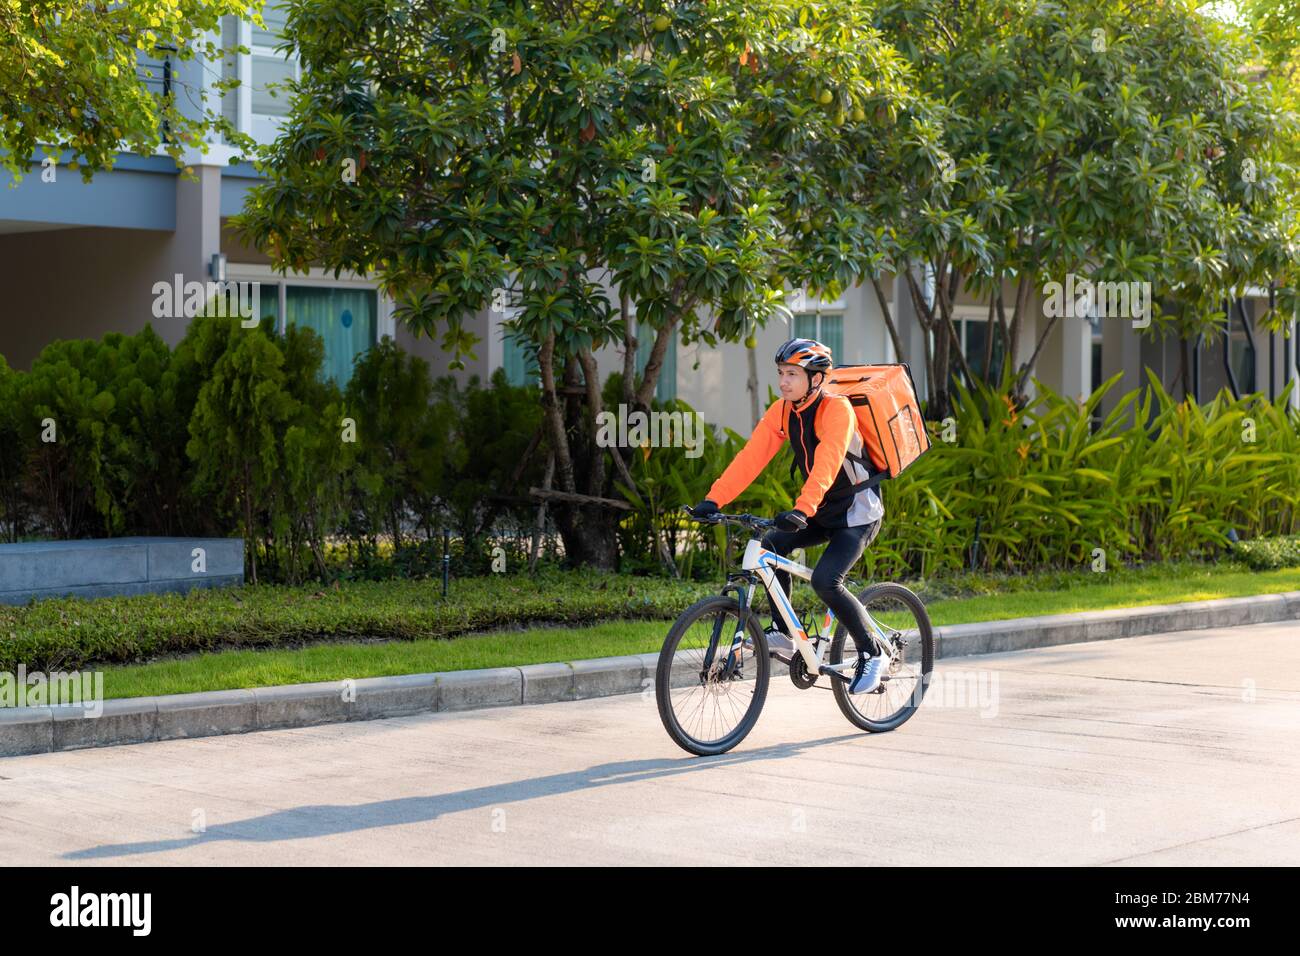 Un homme asiatique livrant à vélo des repas dans les rues de la ville avec une livraison de nourriture chaude des plats à emporter et des restaurants à la maison, livraison express de nourriture a Banque D'Images